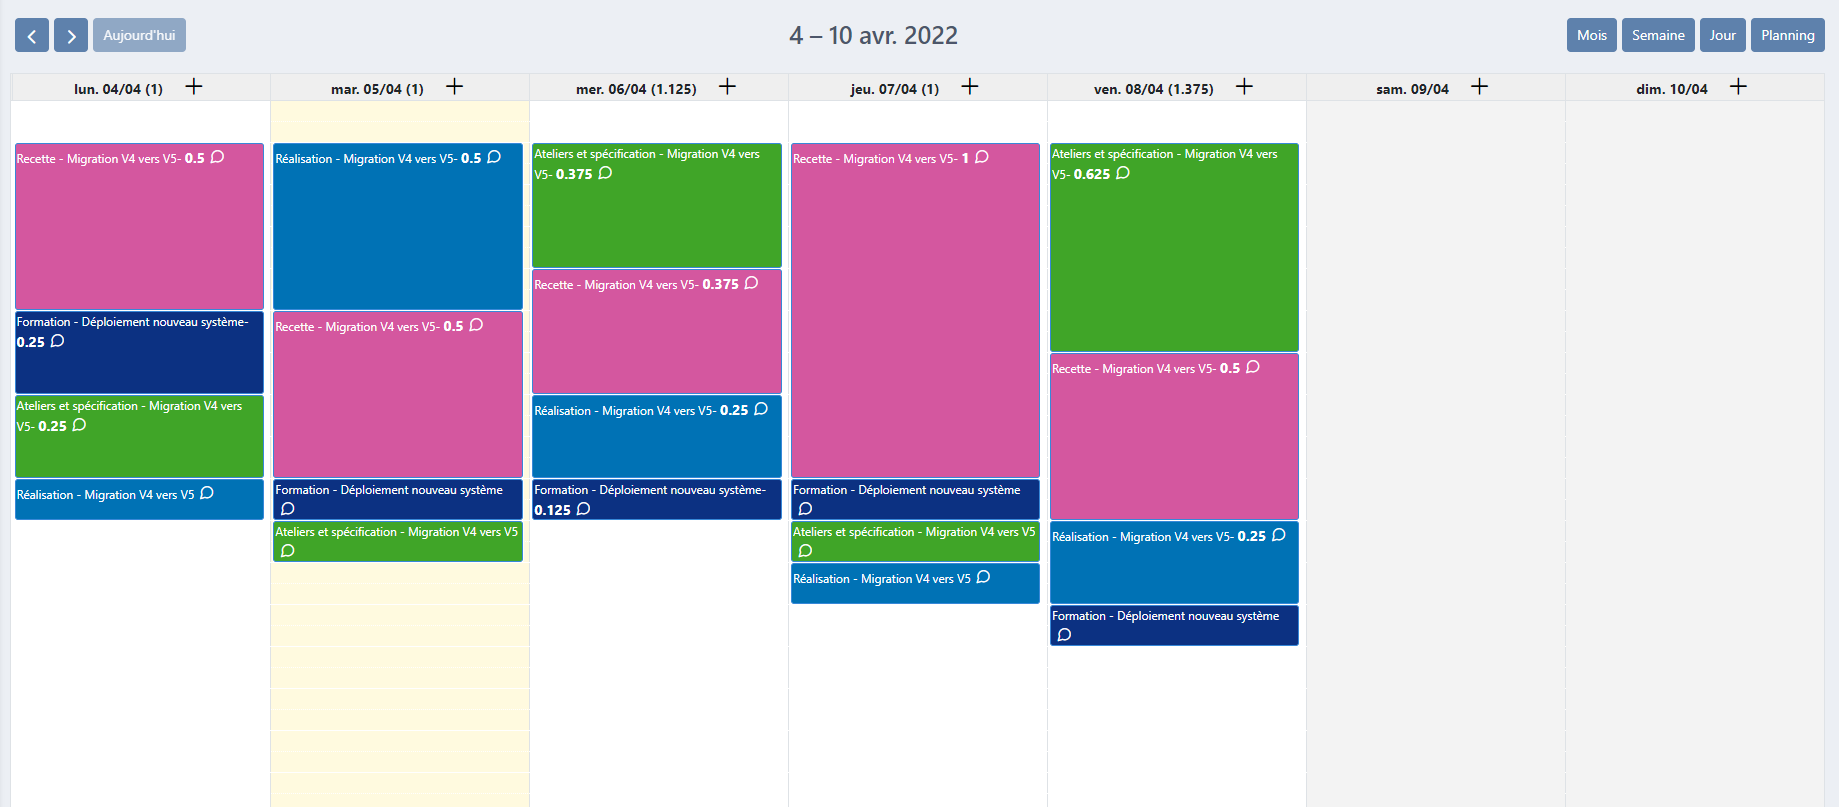 FoxPlan - Calendar of activities